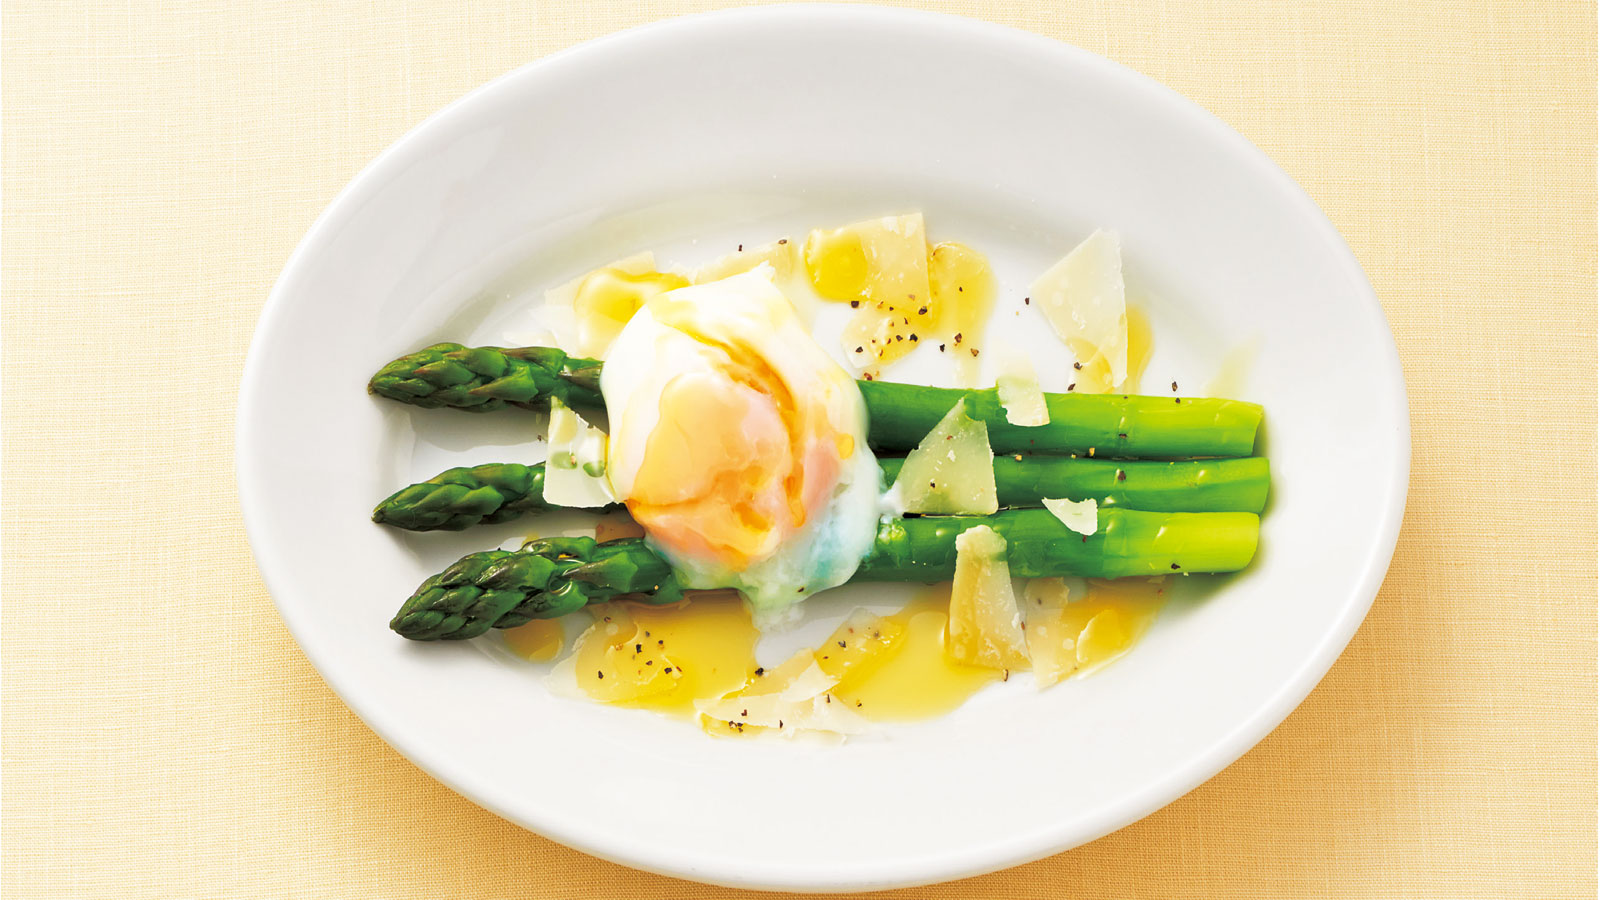 Rizap公式レシピ 卵を使った副菜 アスパラのポーチドエッグサラダ ぎゅってweb リビングくらしナビ